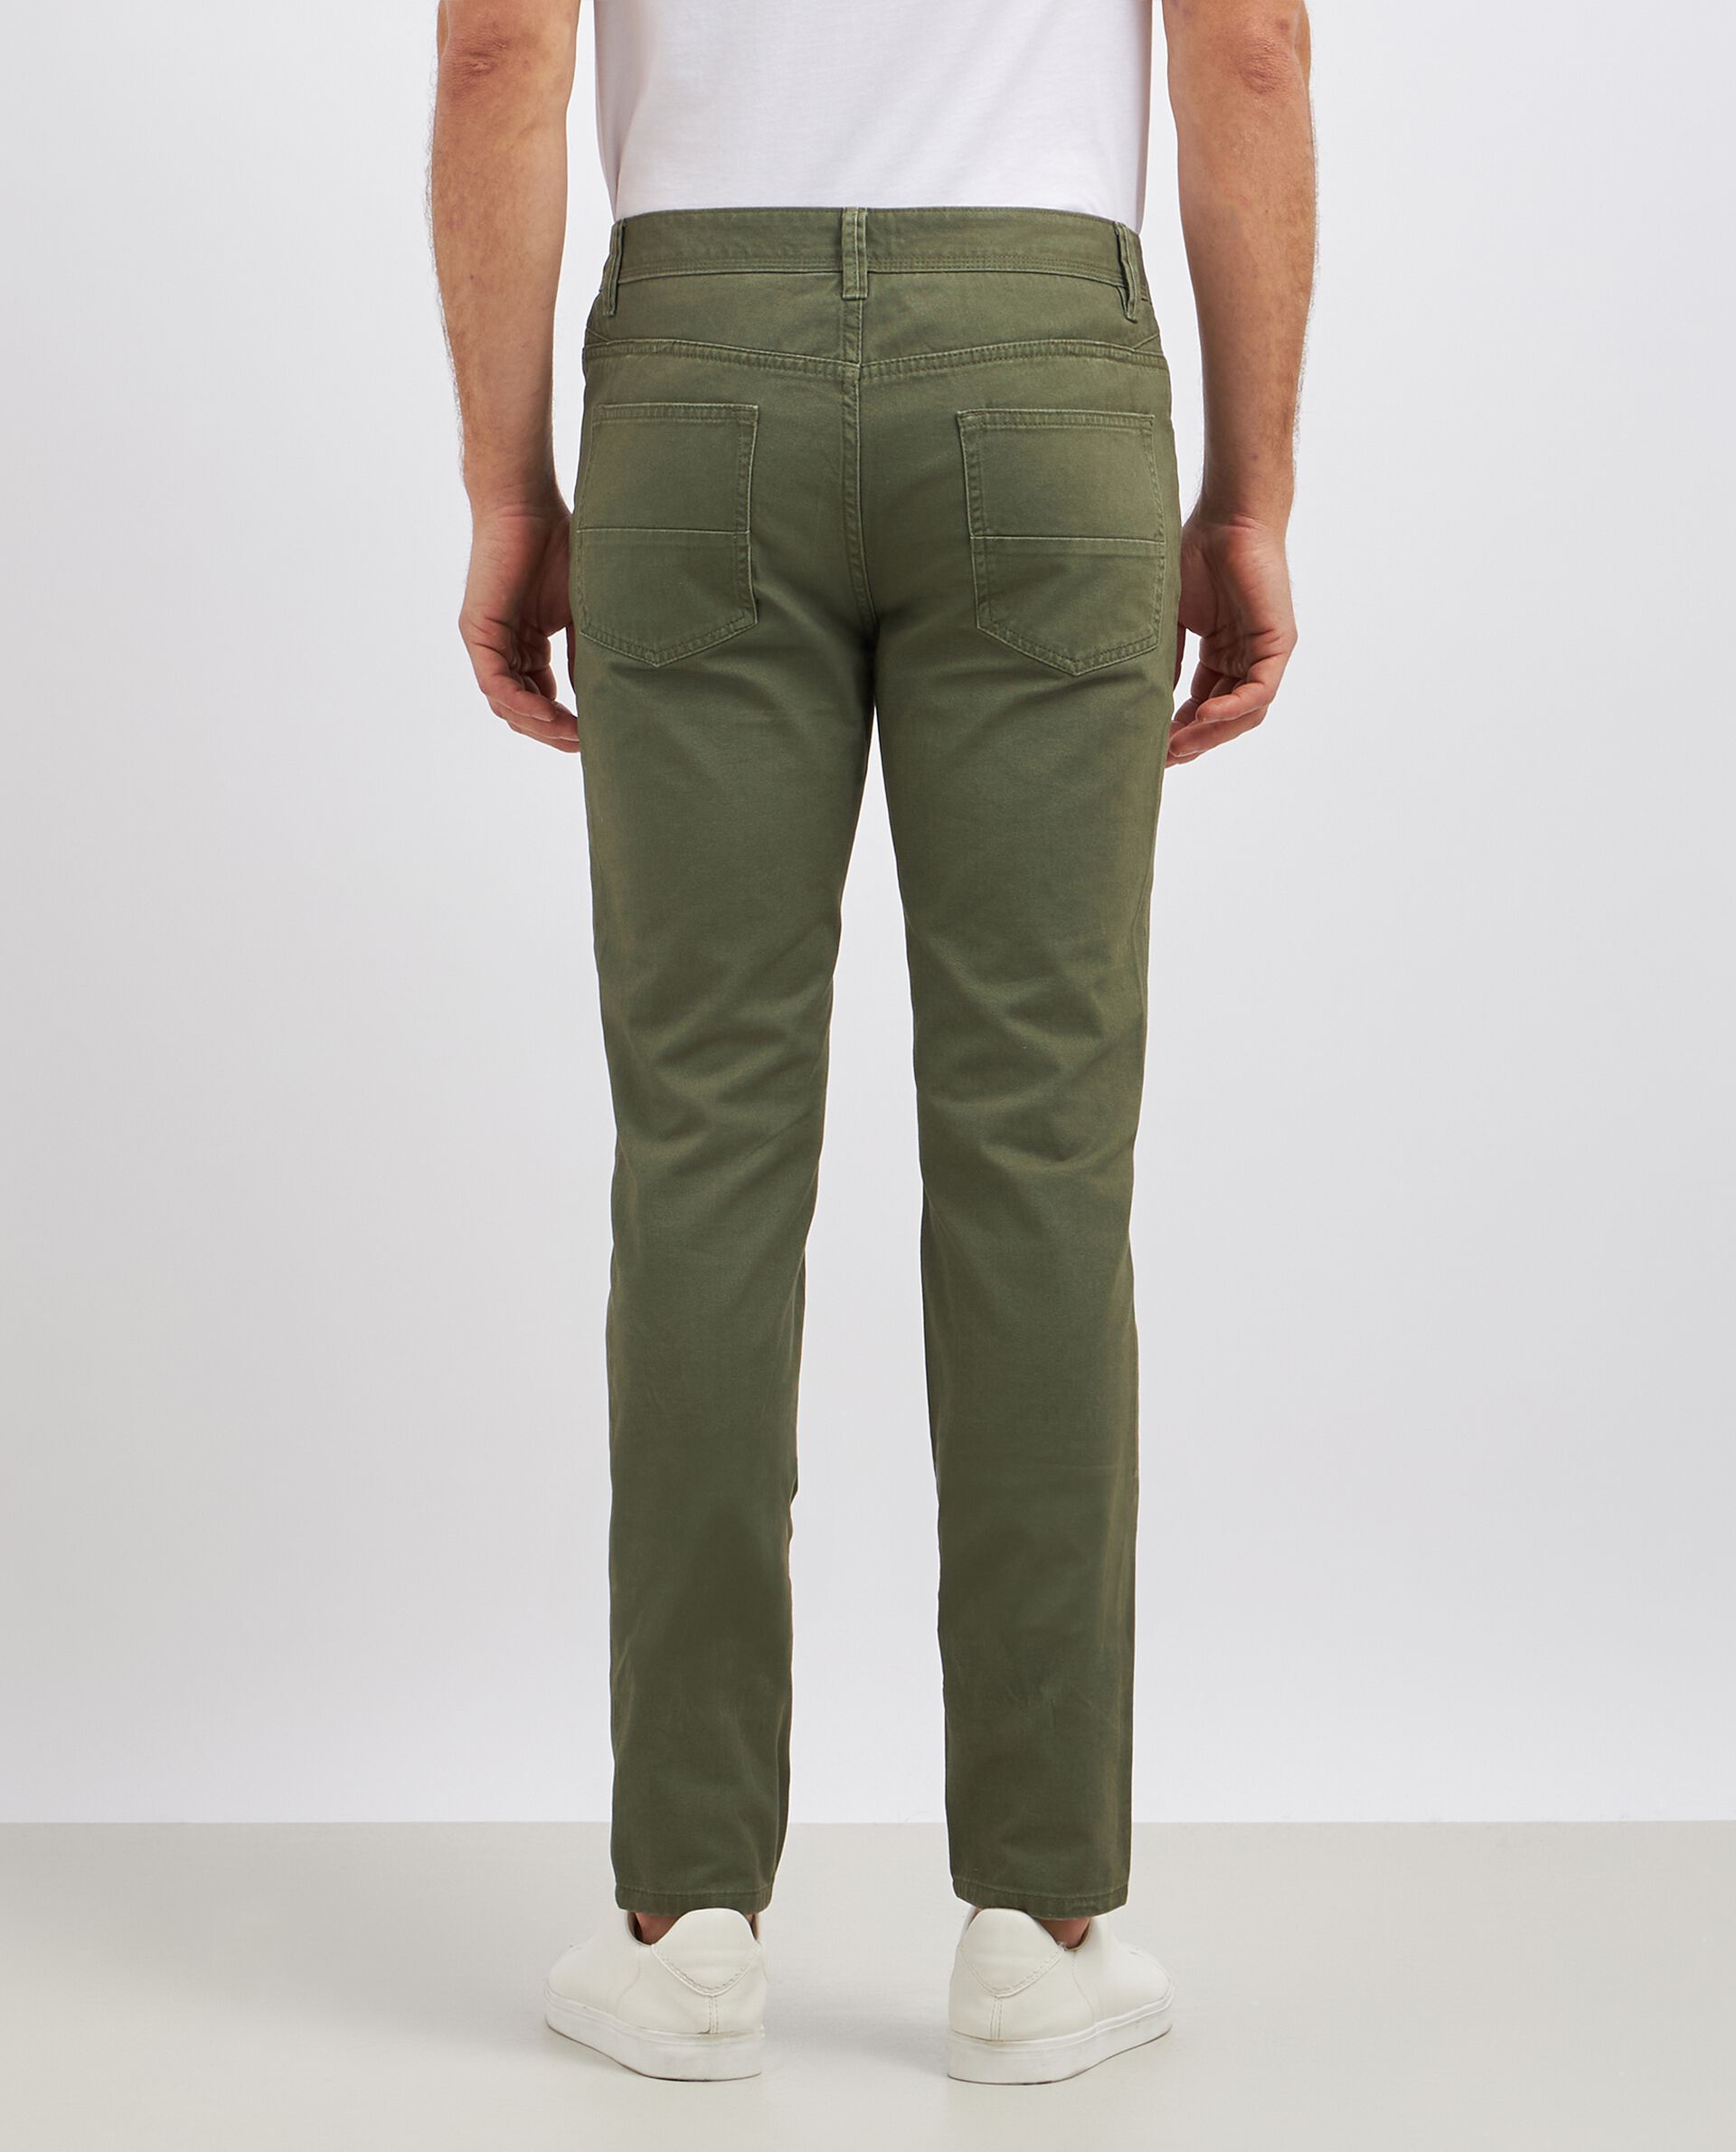 Pantaloni in puro cotone modello 5 tasche uomo